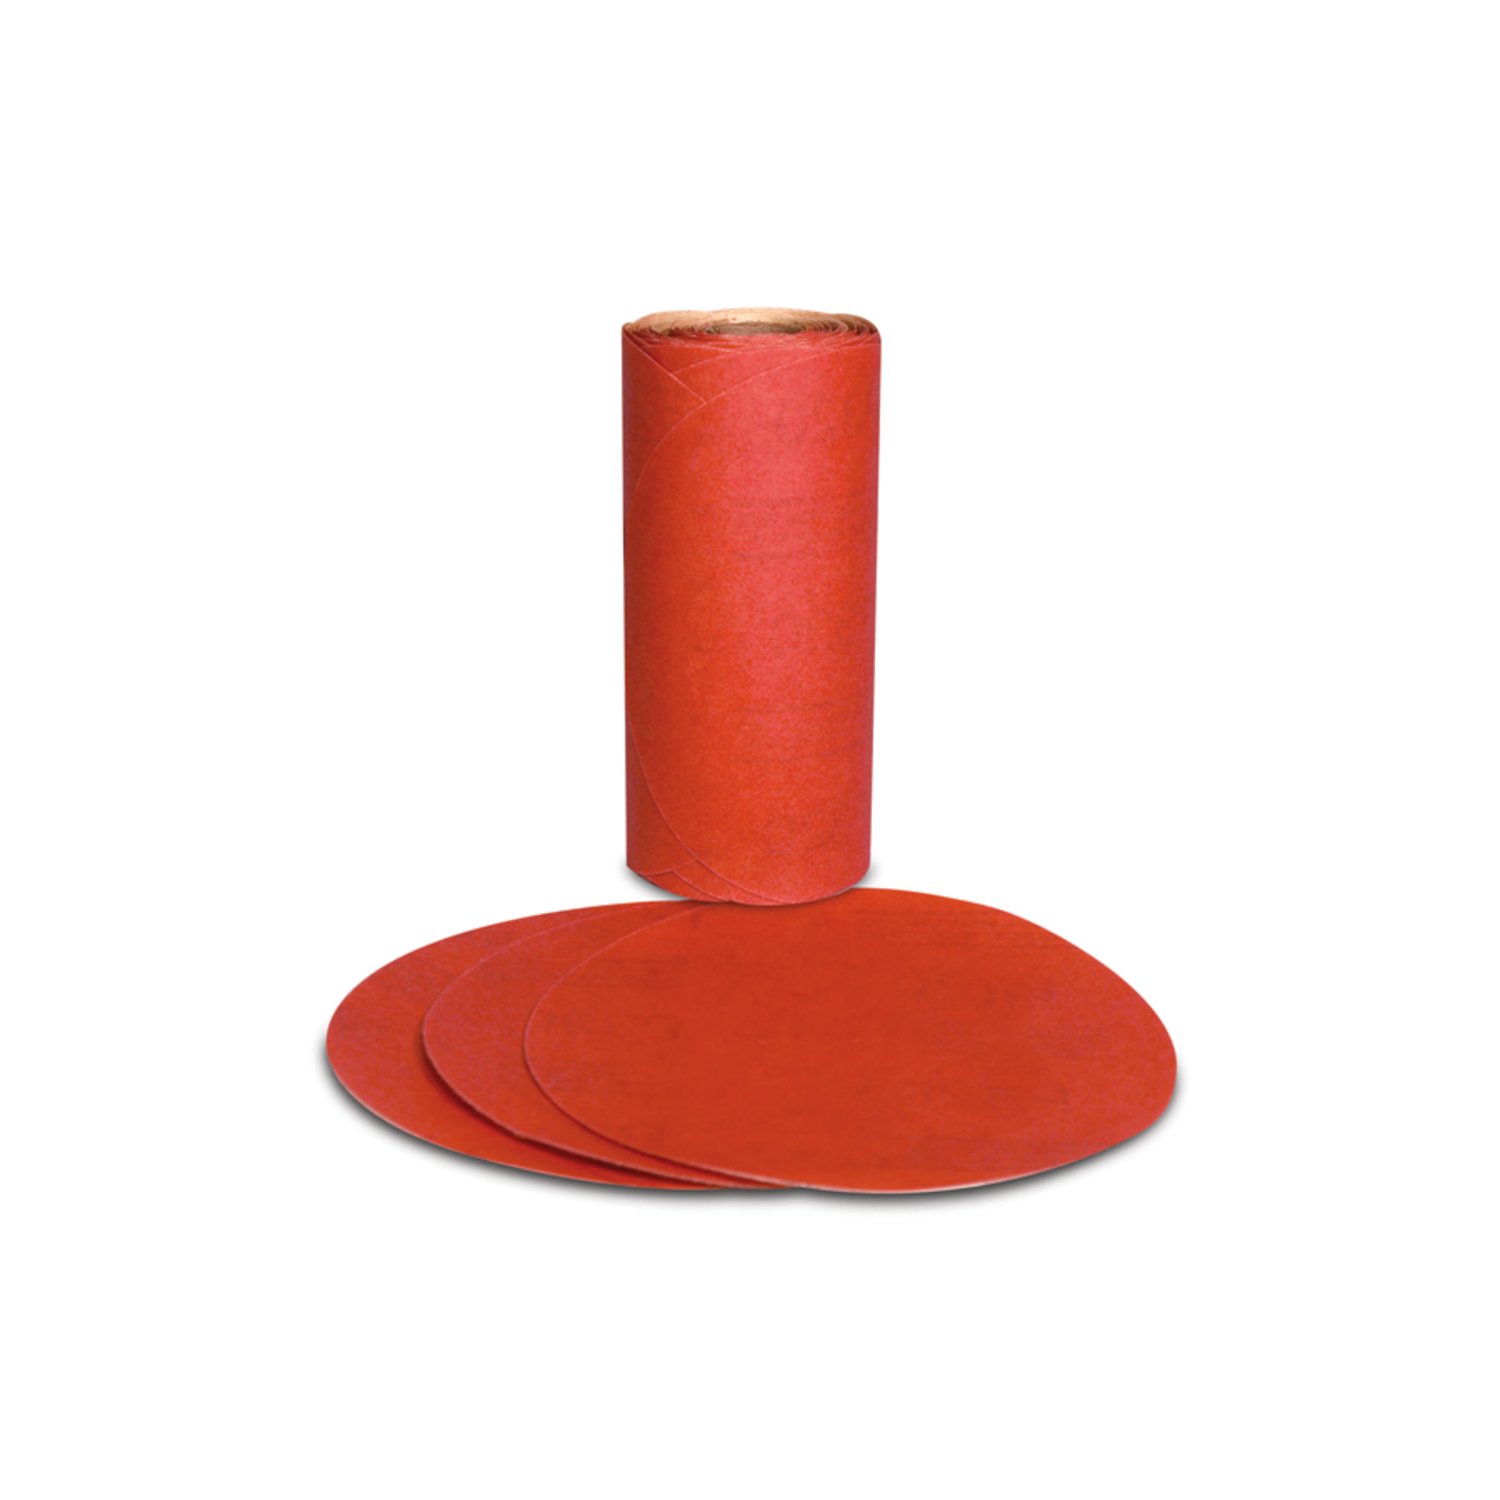 7000119913 - 3M Red Abrasive PSA Disc, 01605, 5 in, P220, 100 discs per roll, 6
rolls per case